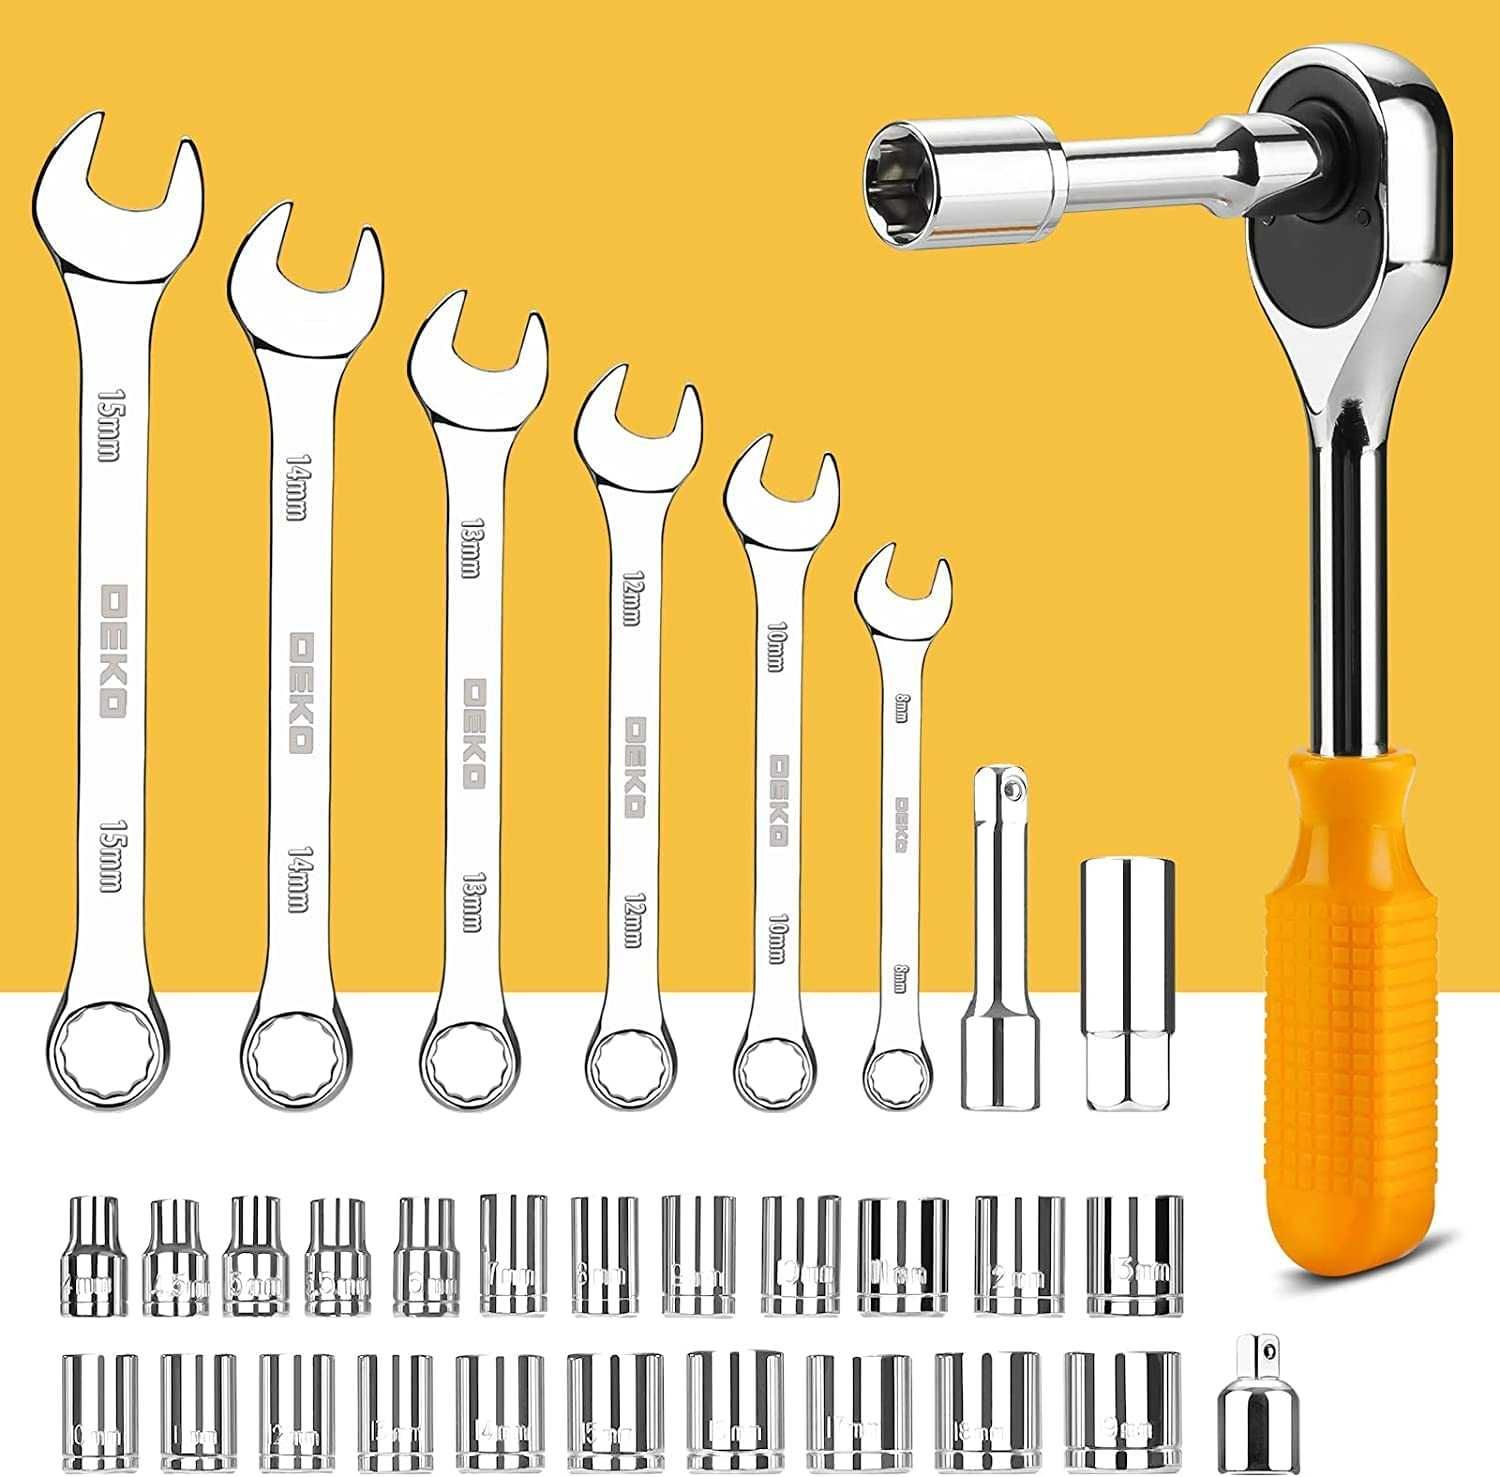 **NOVO** Conjunto de chaves e ferramentas Deko 168 peças em aço